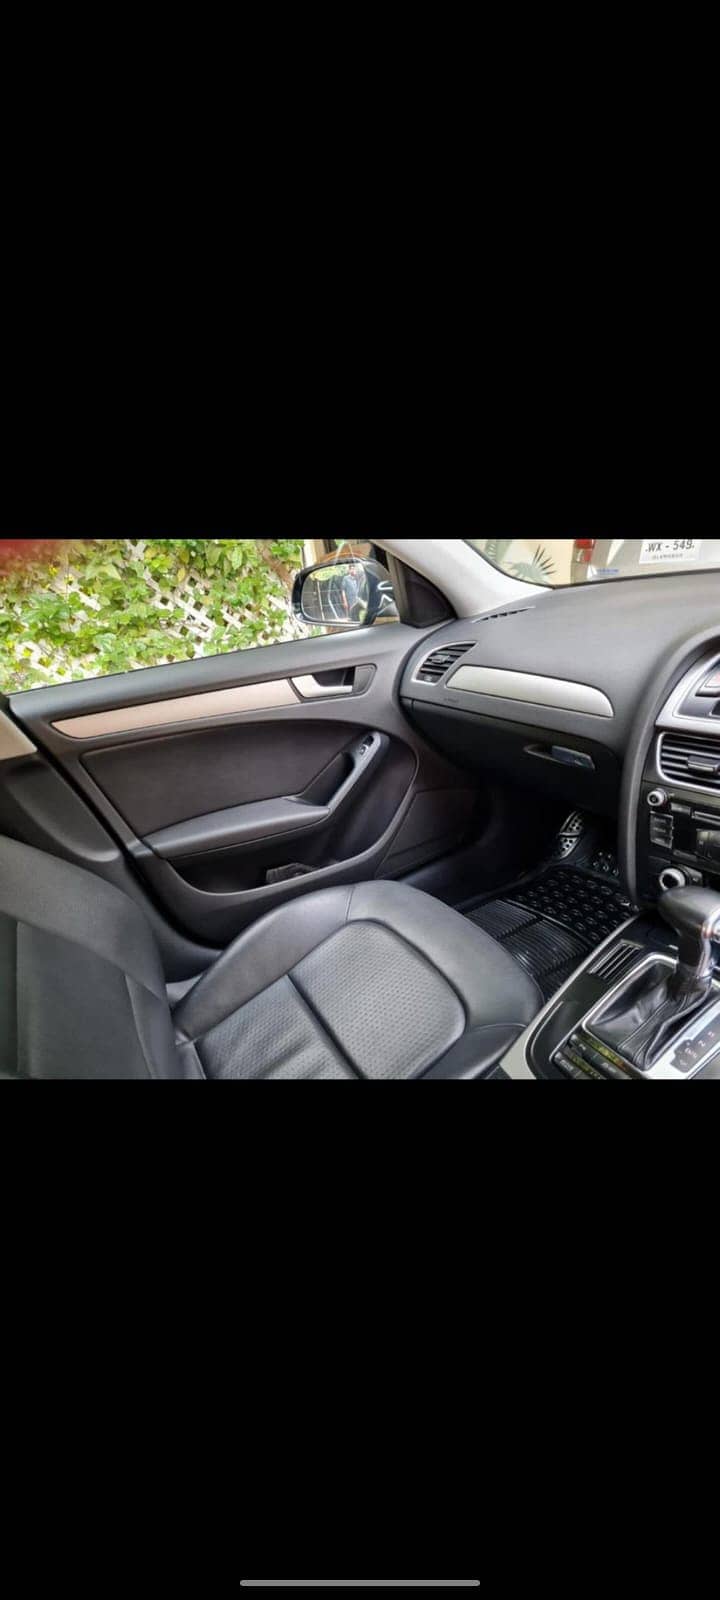 Audi A4 lemosine 2013 Model 6